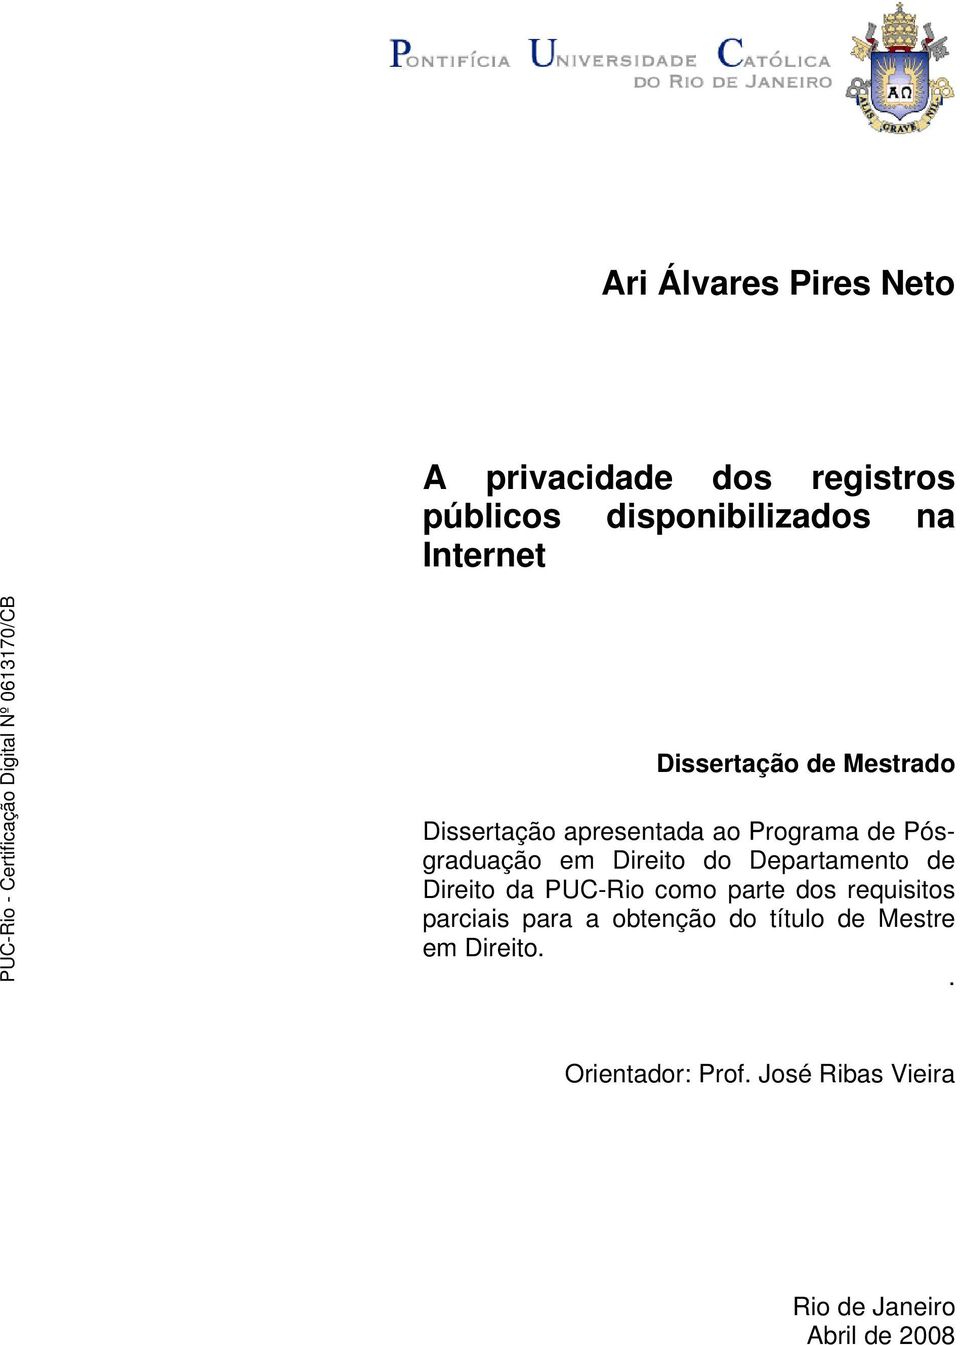 Departamento de Direito da PUC-Rio como parte dos requisitos parciais para a obtenção do